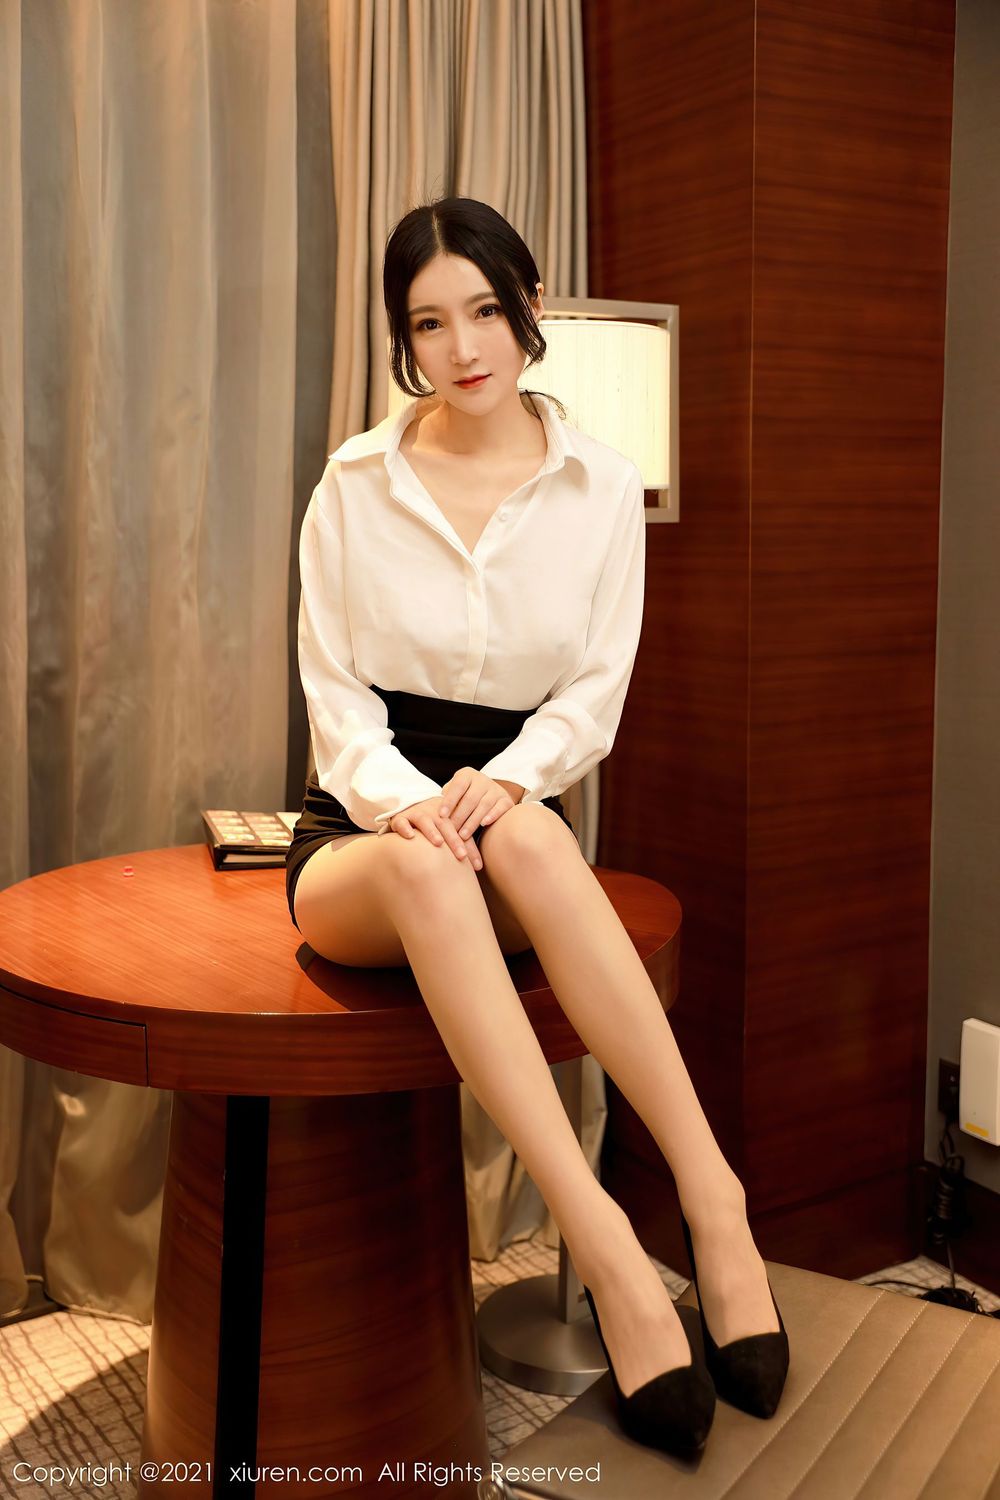 新人模特林煊煊 - 白衬衫黑短裙职场秘书OL系列写真